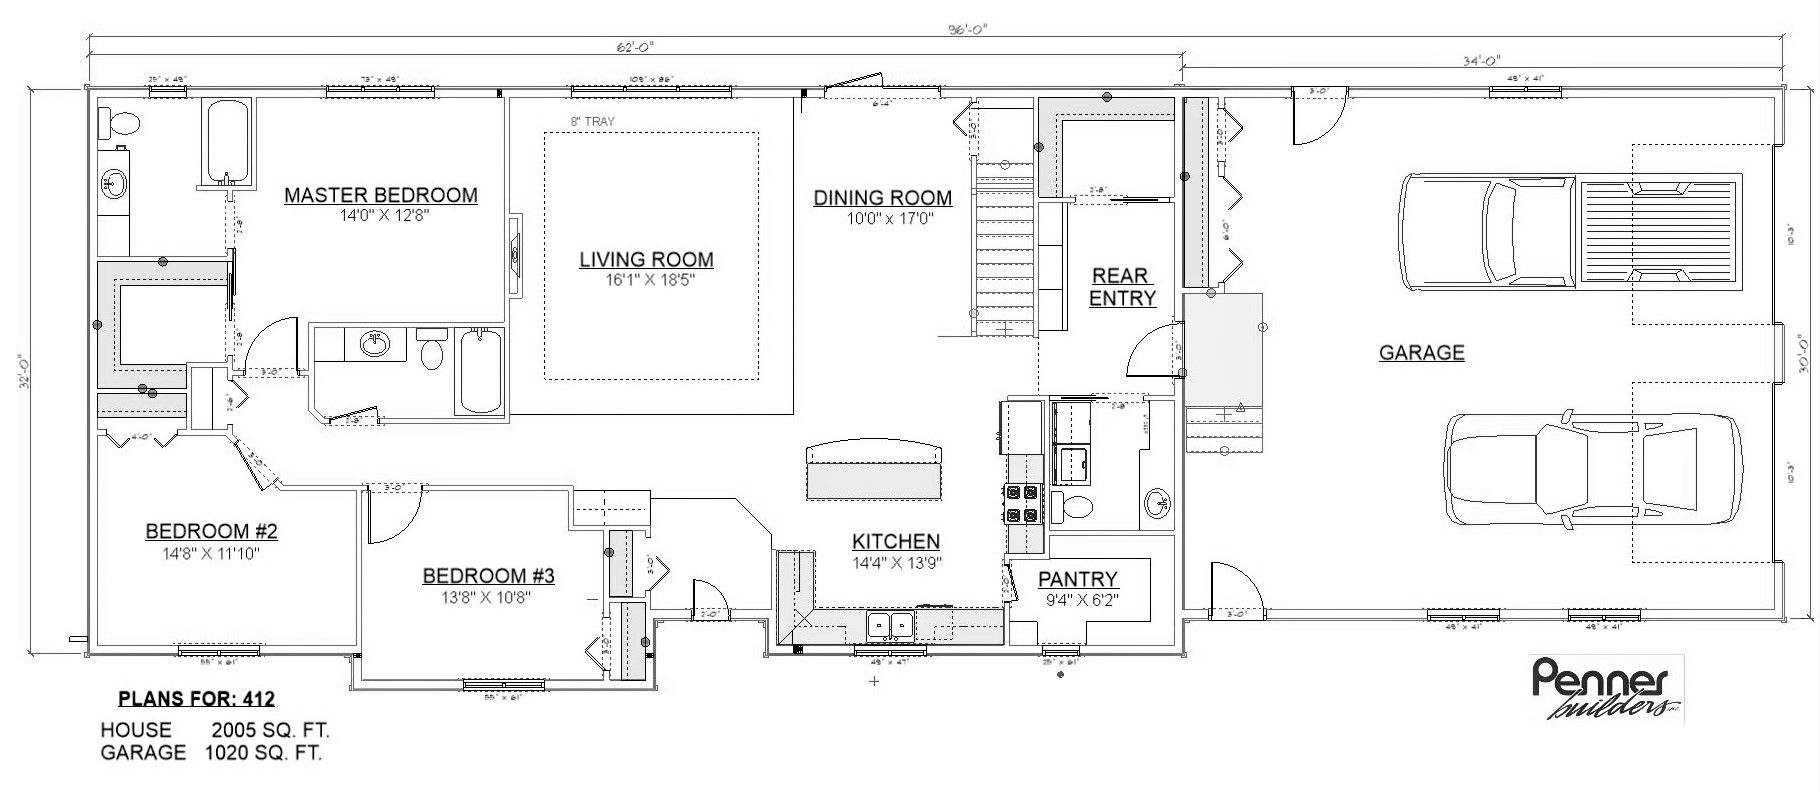 Penner Homes Floor Plan Id: 412